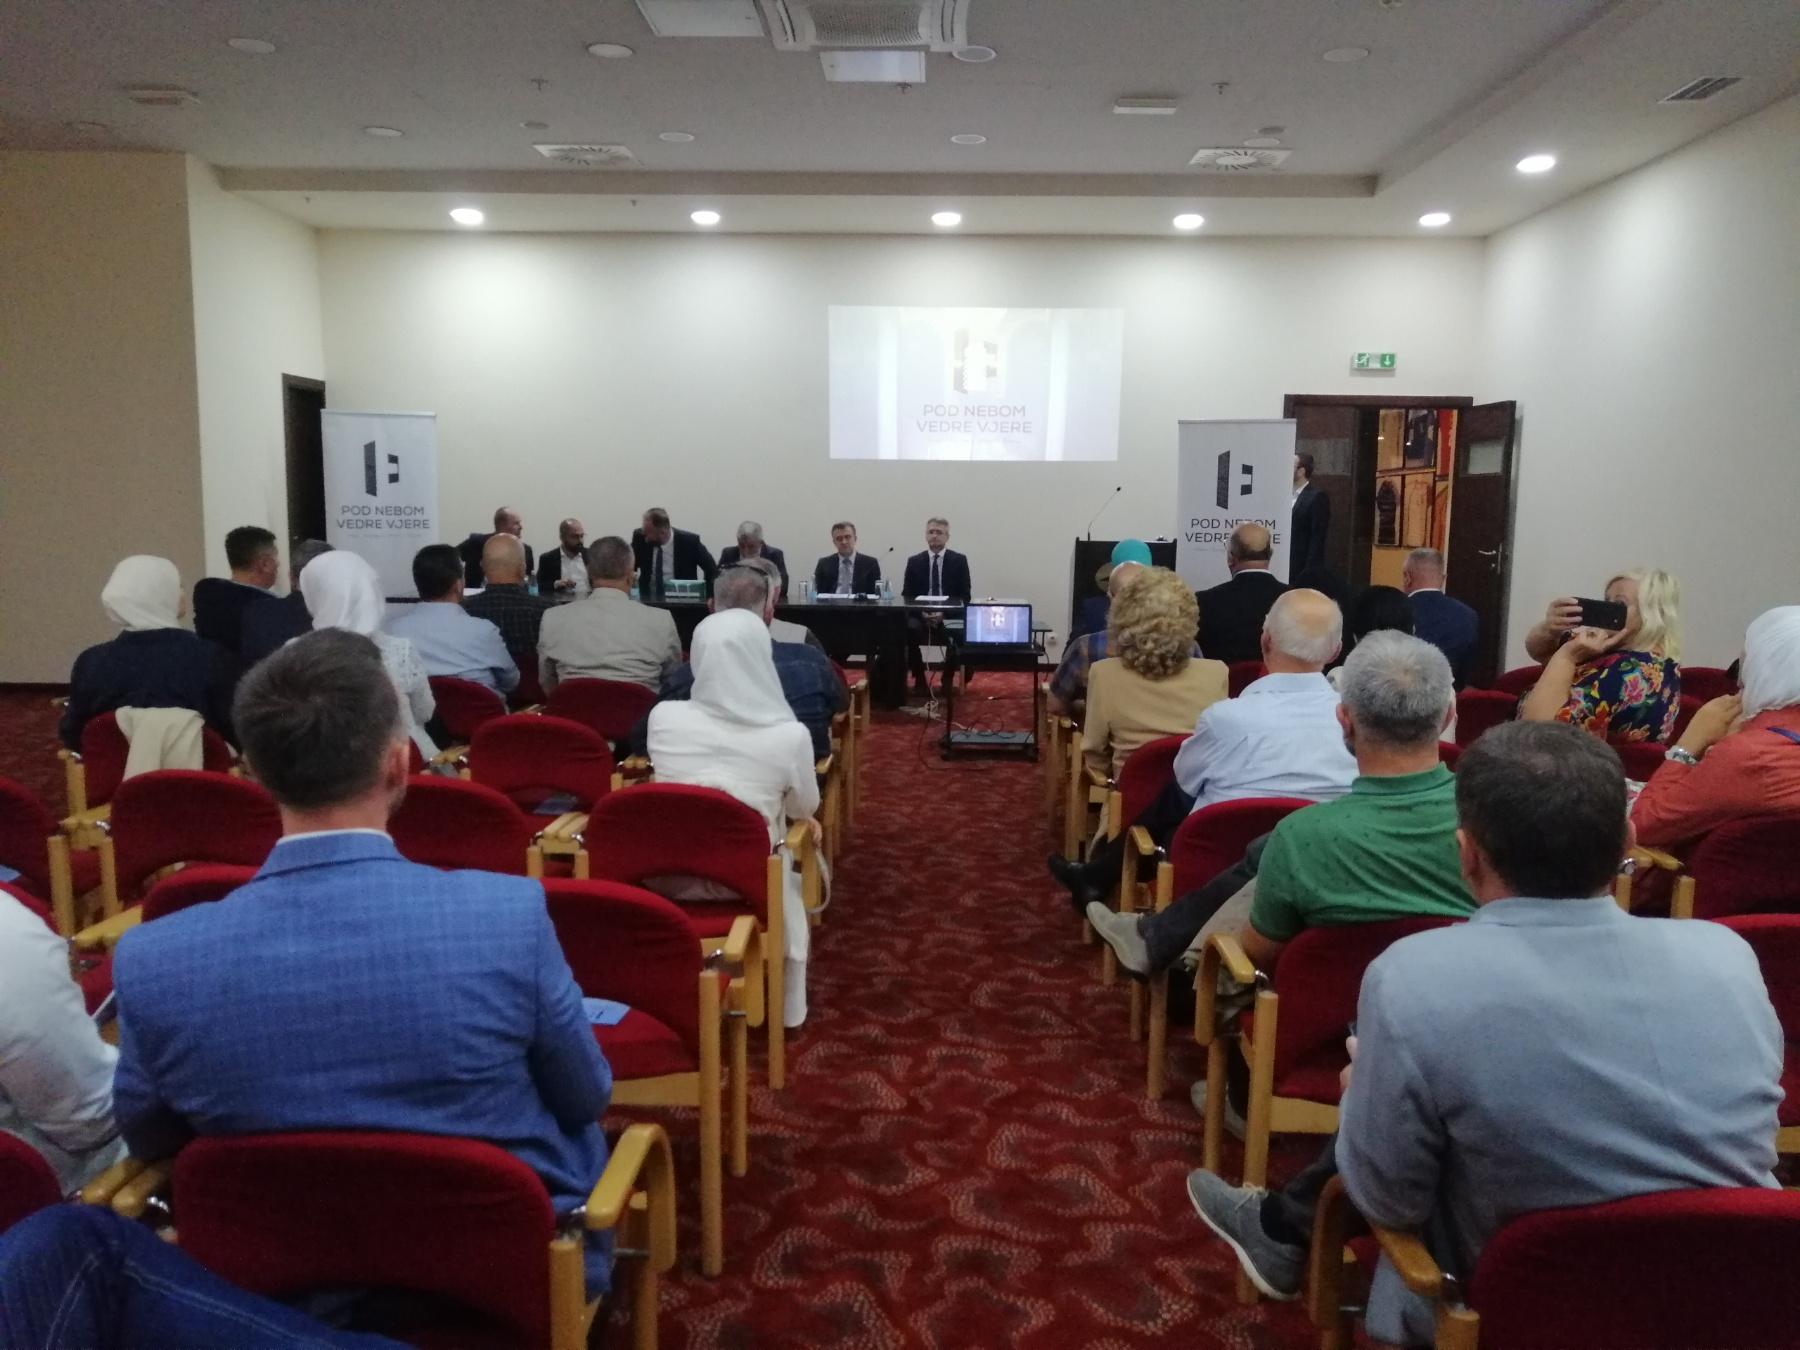 Predstavljen projekat "Pod nebom vedre vjere - Islam i Evropa u iskustvu Bosne"